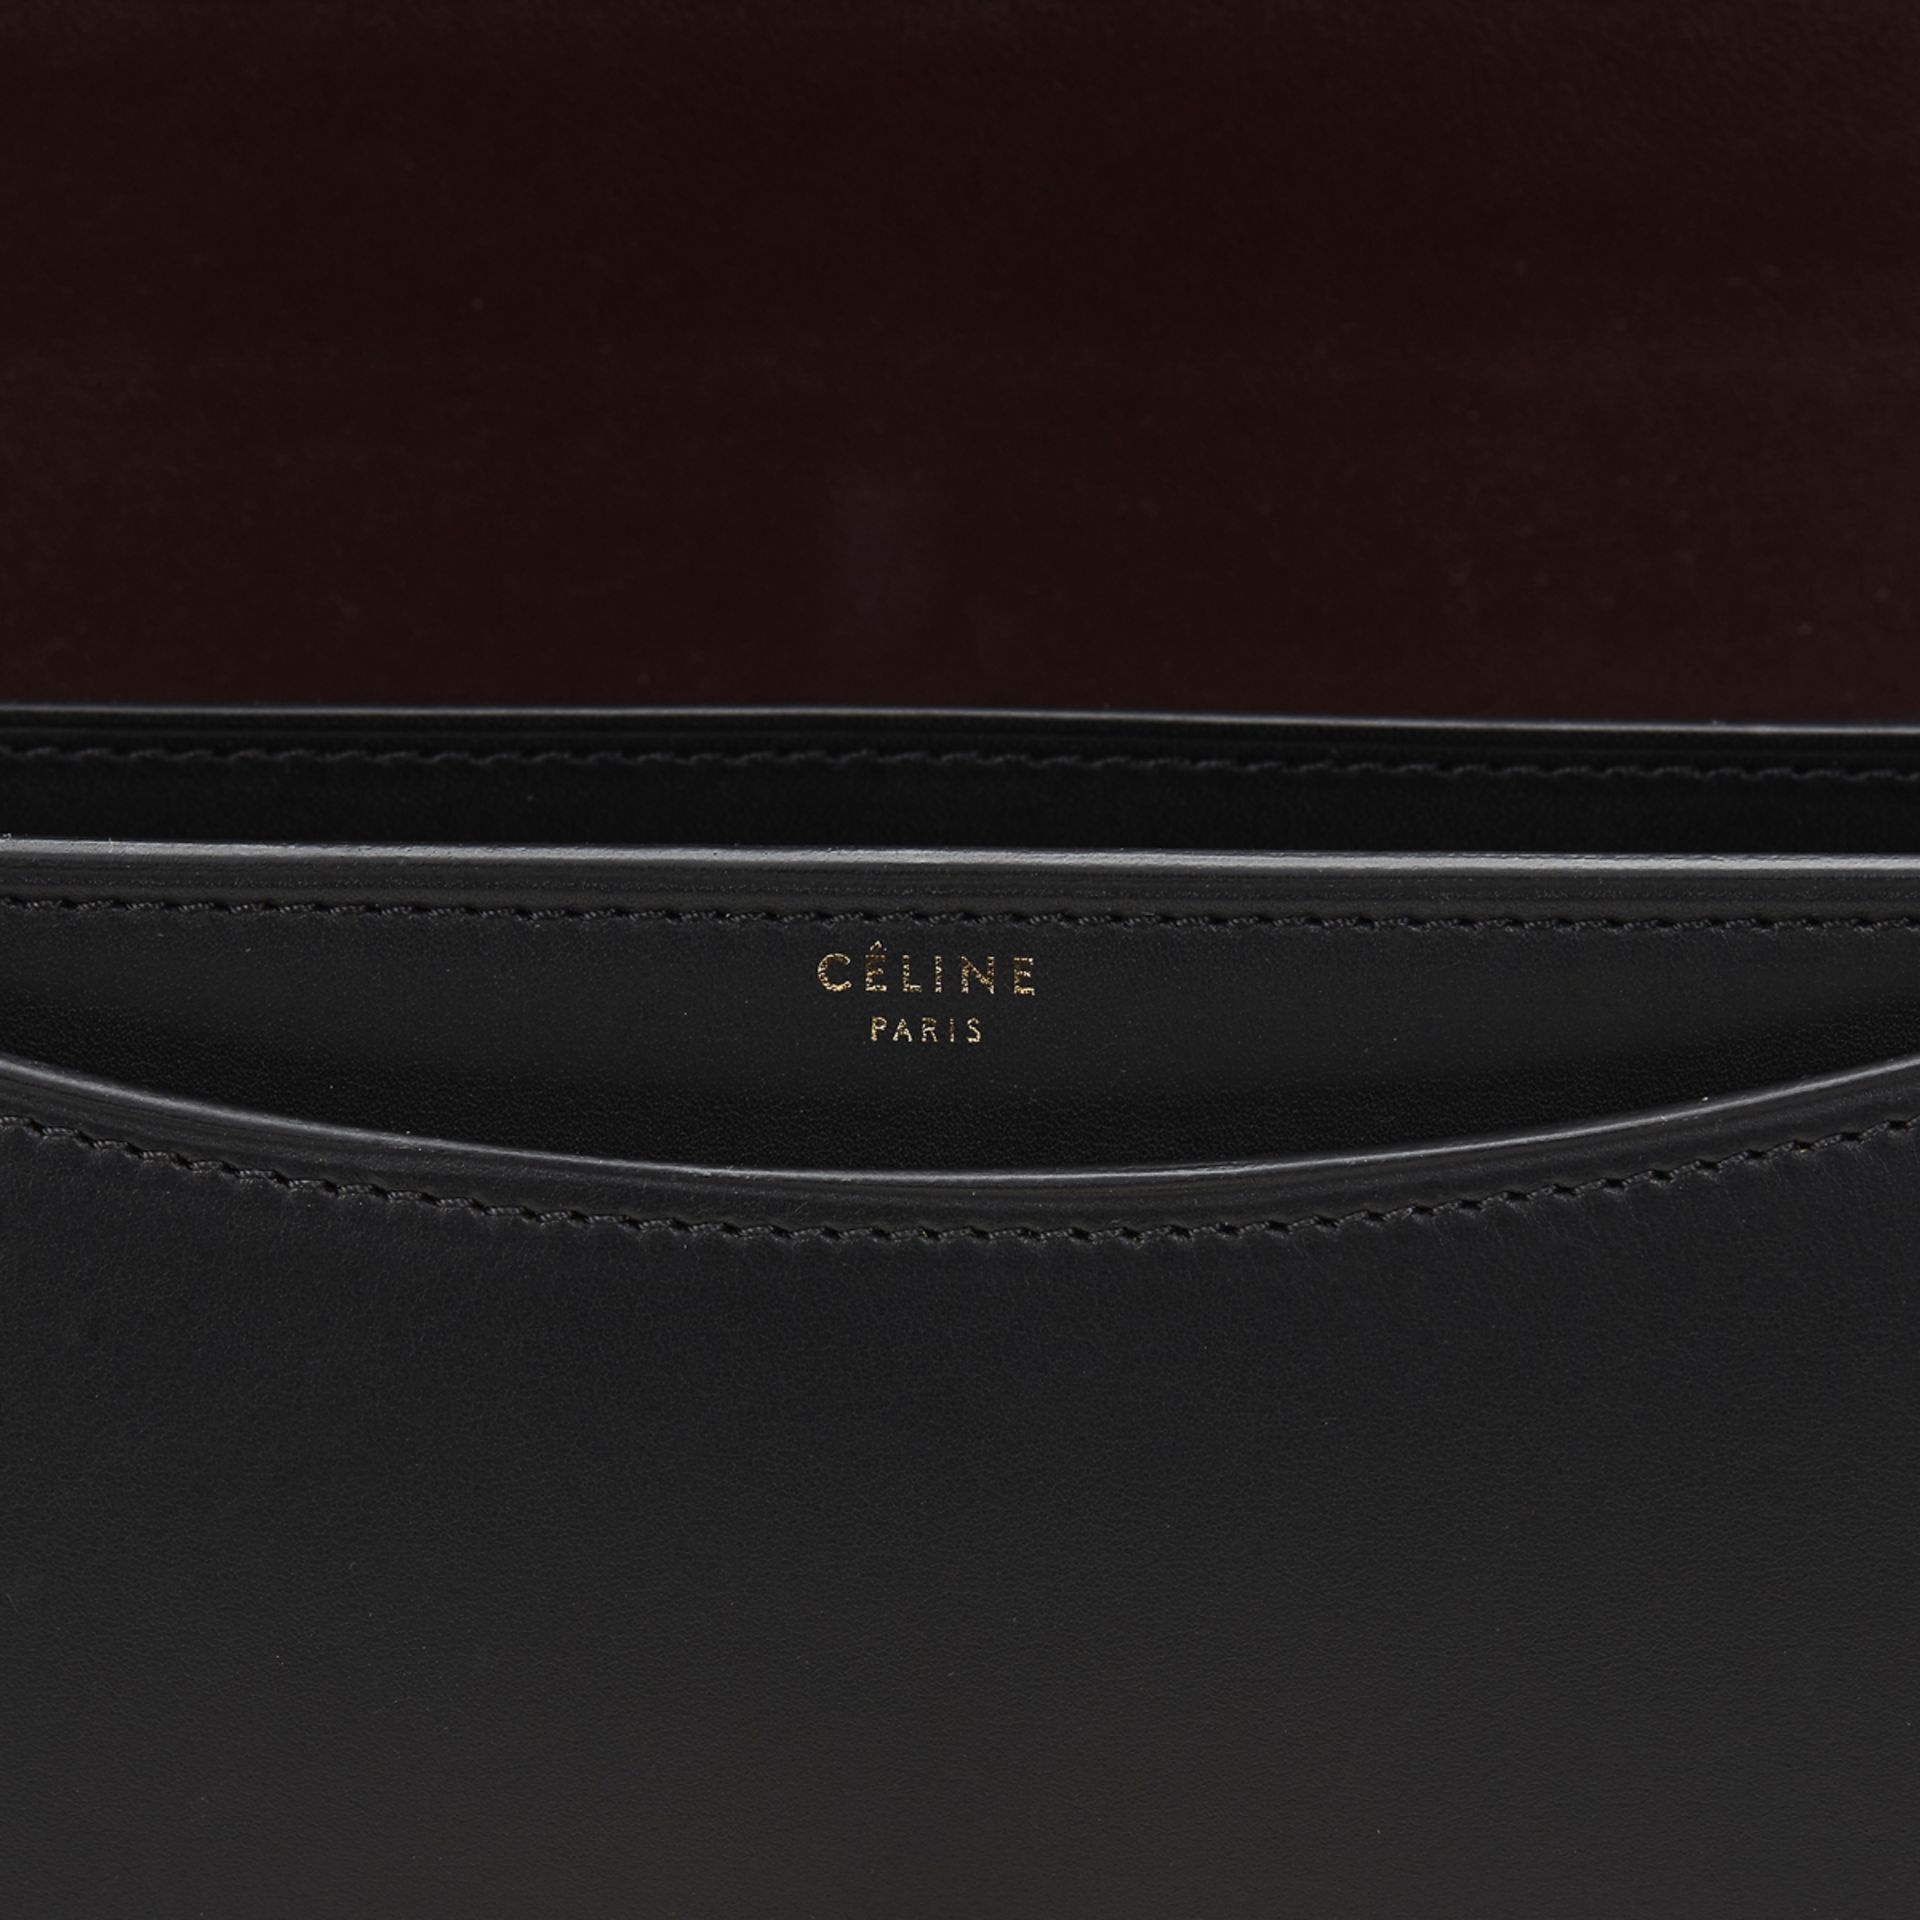 CELINE Case Flap Bag - Image 8 of 12